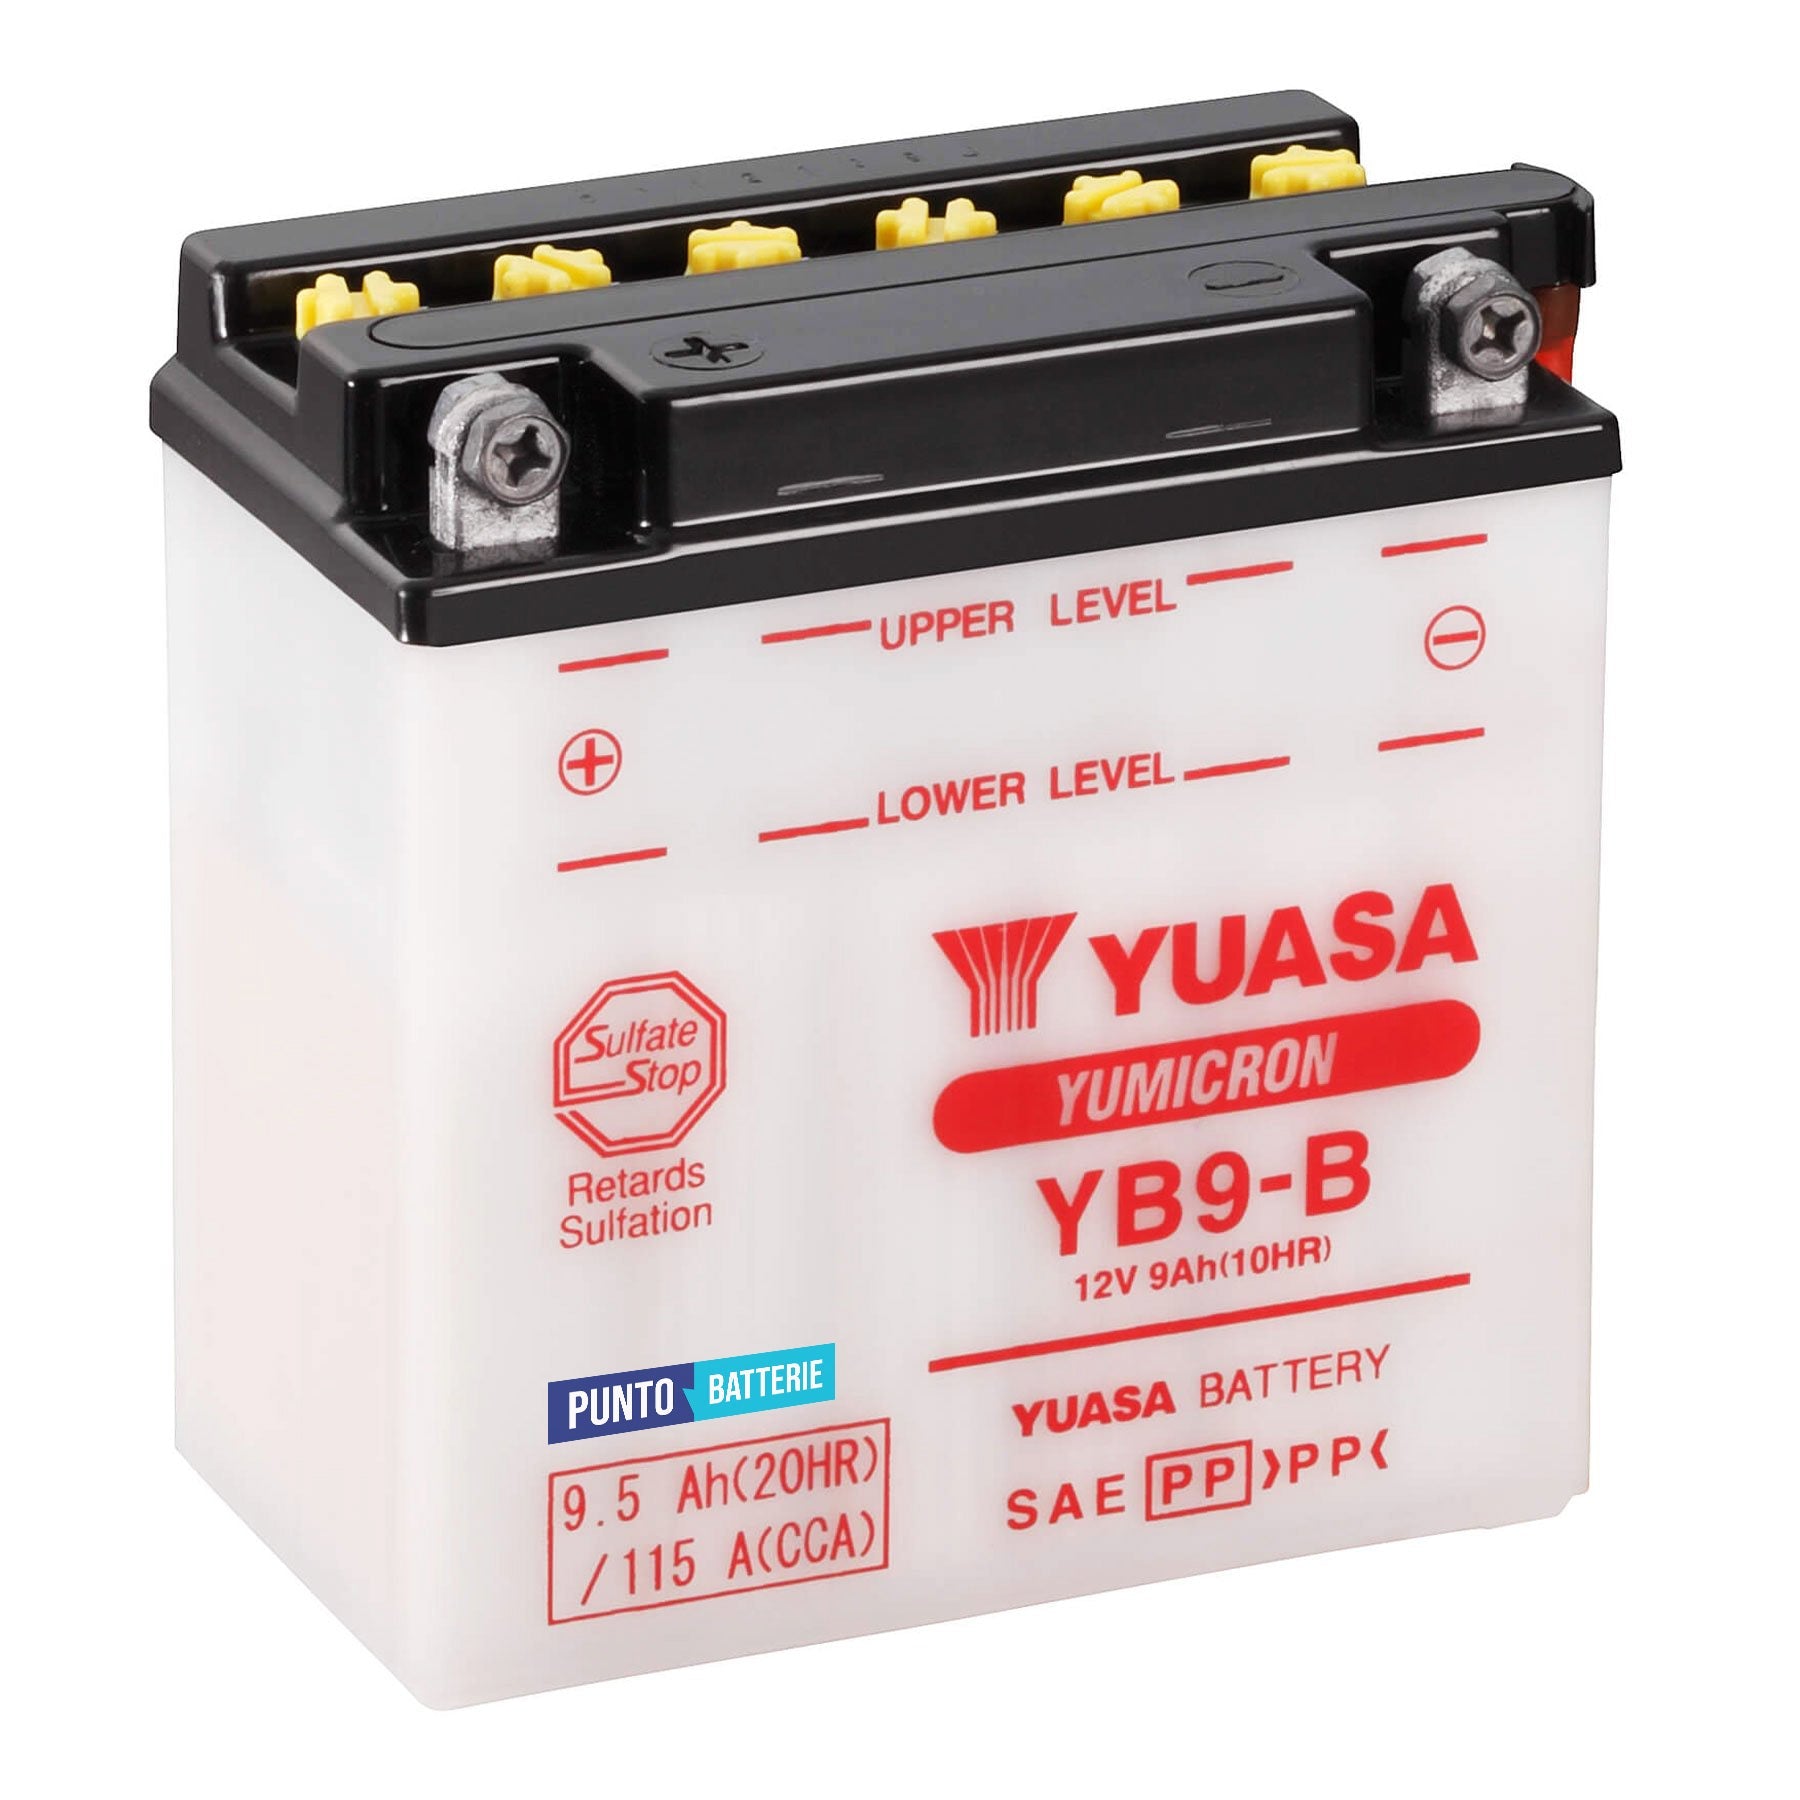 Batteria originale Yuasa YuMicron YB9-B, dimensioni 137 x 77 x 141, polo positivo a sinistra, 12 volt, 9 amperora, 115 ampere. Batteria per moto, scooter e powersport.